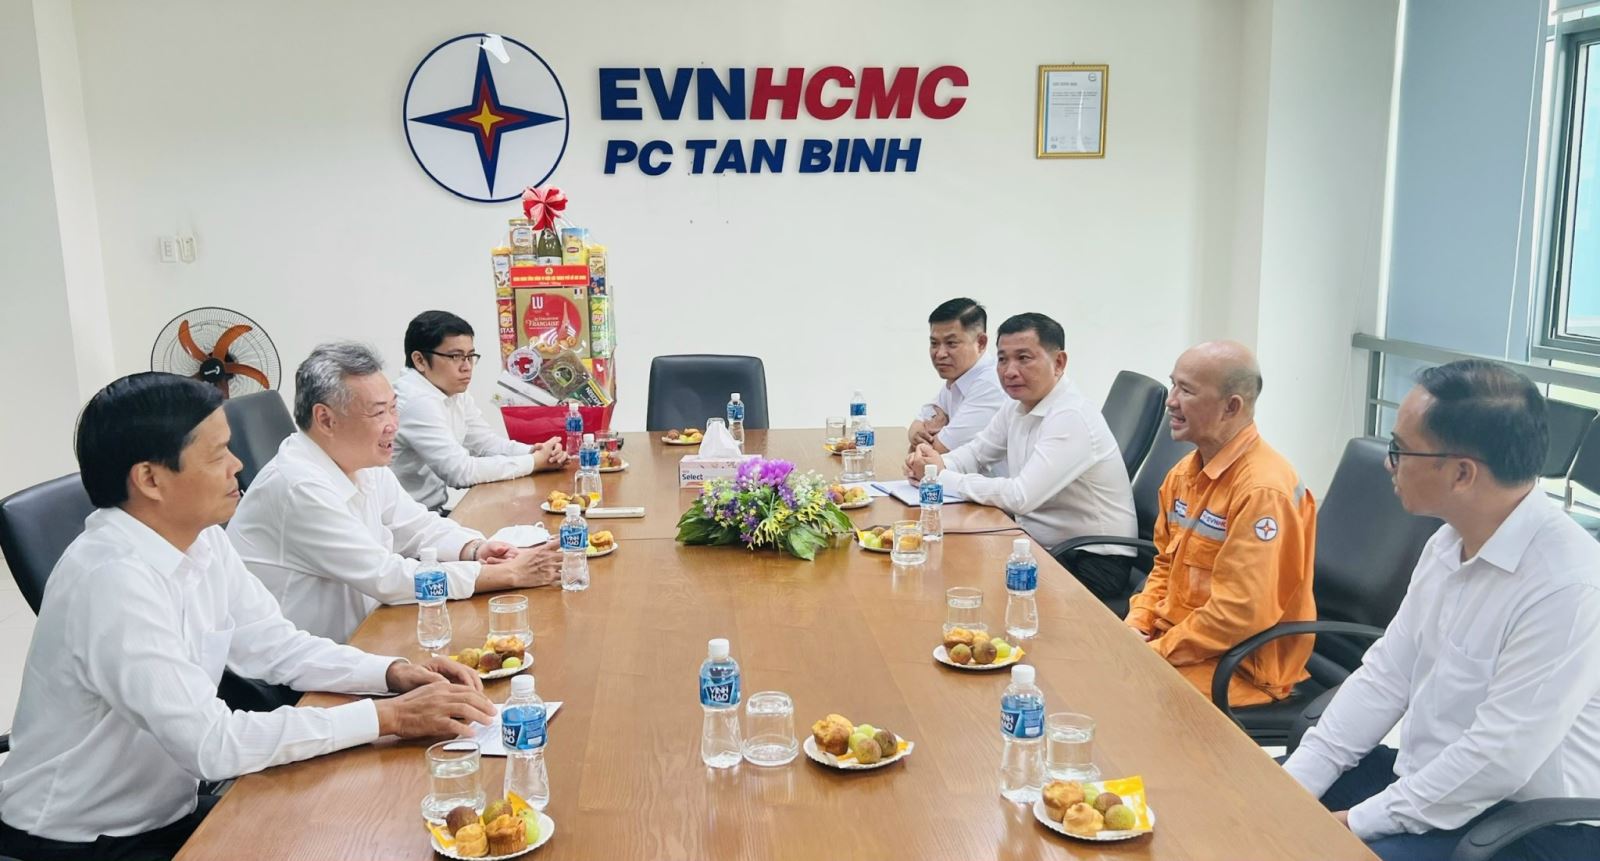 Chủ tịch Hội đồng thành viên EVNHCMC Phạm Quốc Bảo thăm hỏi anh Nguyễn Thông (người mặc áo cam) bị bệnh hiểm nghèo.